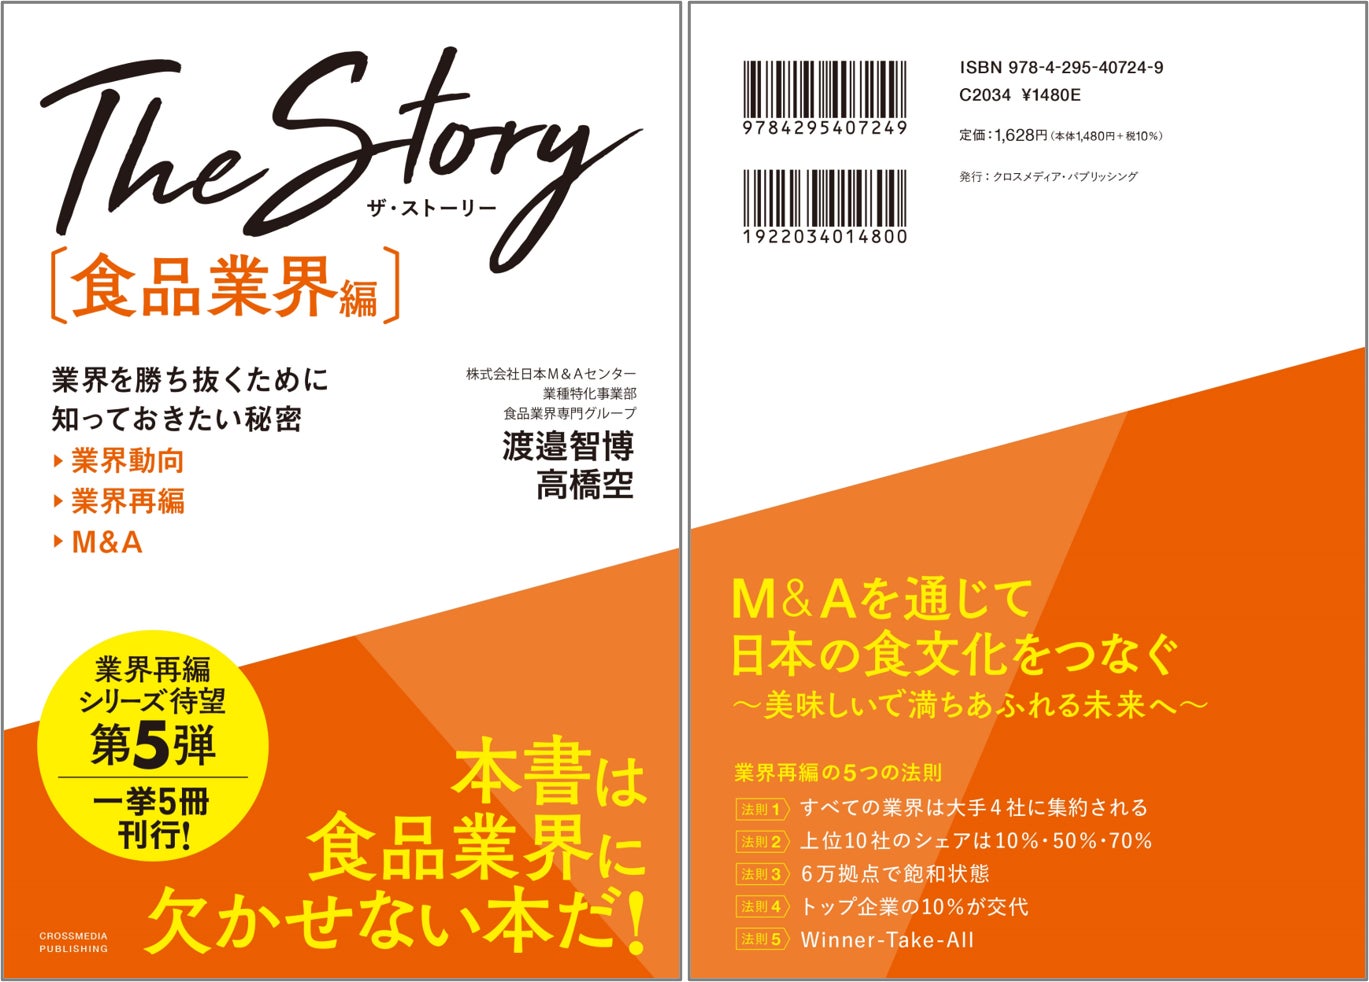 7月6日発売 書籍『The Story［食品業界編］業界を勝ち抜くために知っておきたい秘密 業界動向・業界再編・M&A』